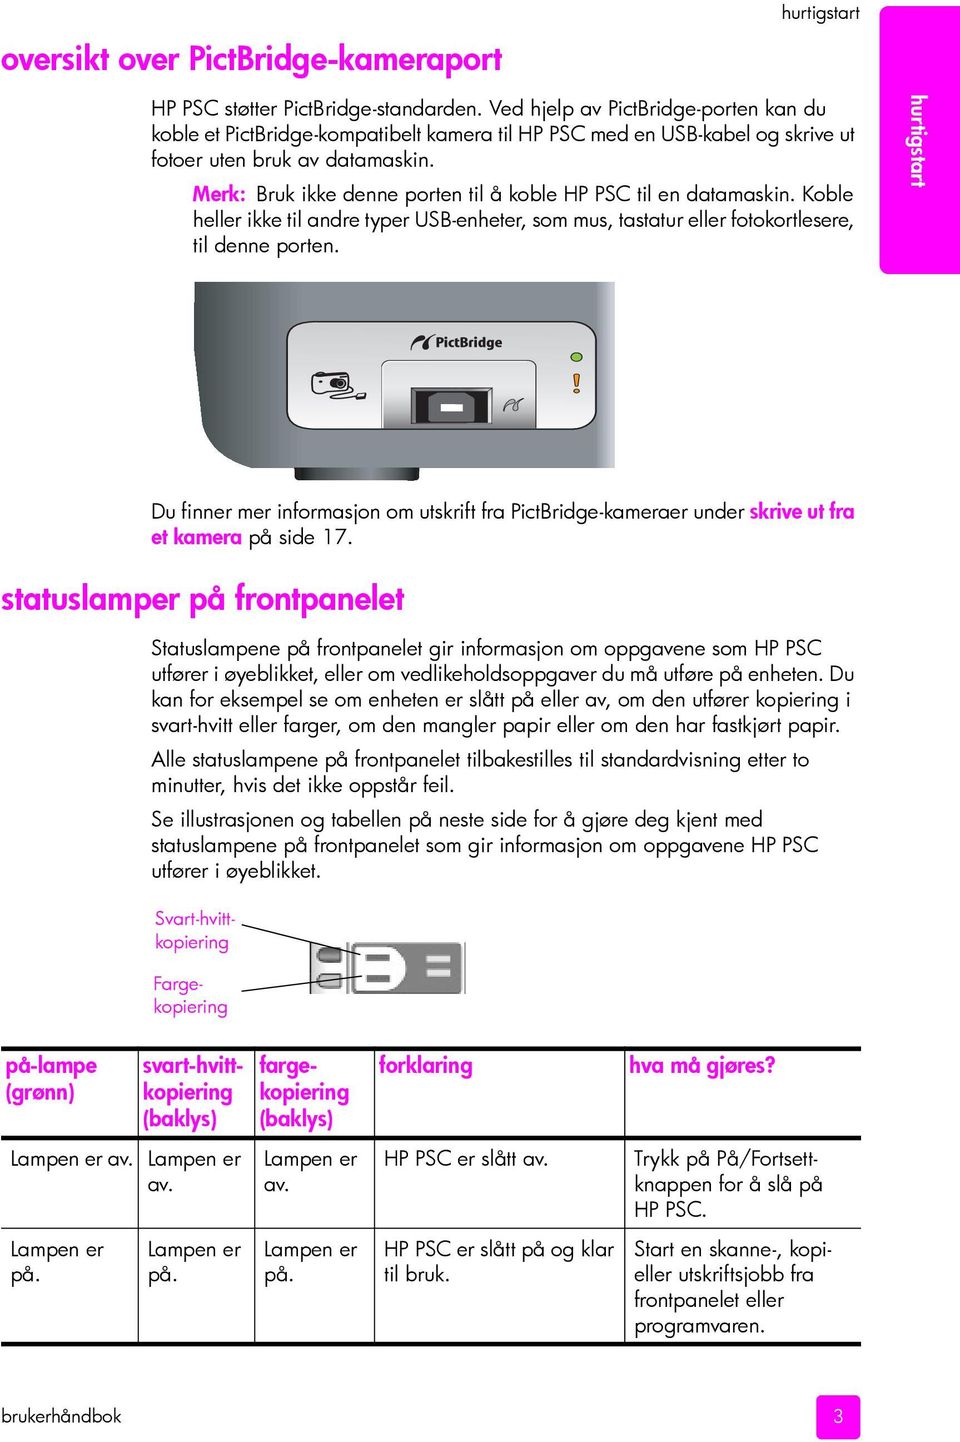 Merk: Bruk ikke denne porten til å koble HP PSC til en datamaskin. Koble heller ikke til andre typer USB-enheter, som mus, tastatur eller fotokortlesere, til denne porten.